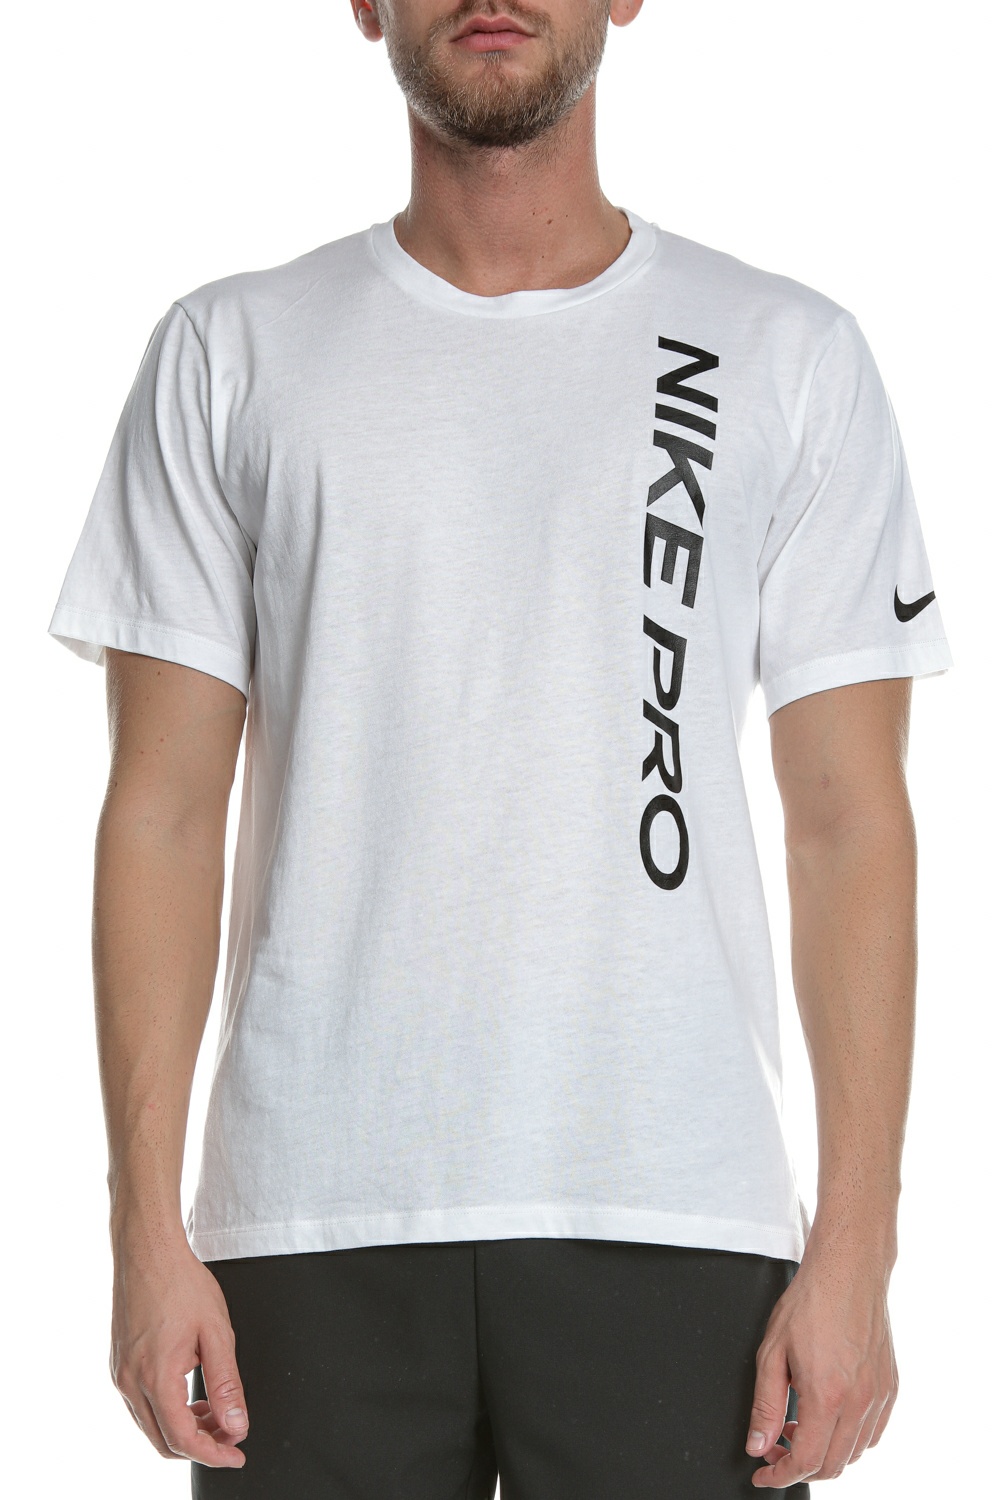 Ανδρικά/Ρούχα/Αθλητικά/T-shirt NIKE - Ανδρική μπλούζα NIKE NP SS TOP NPC BURNOUT λευκή